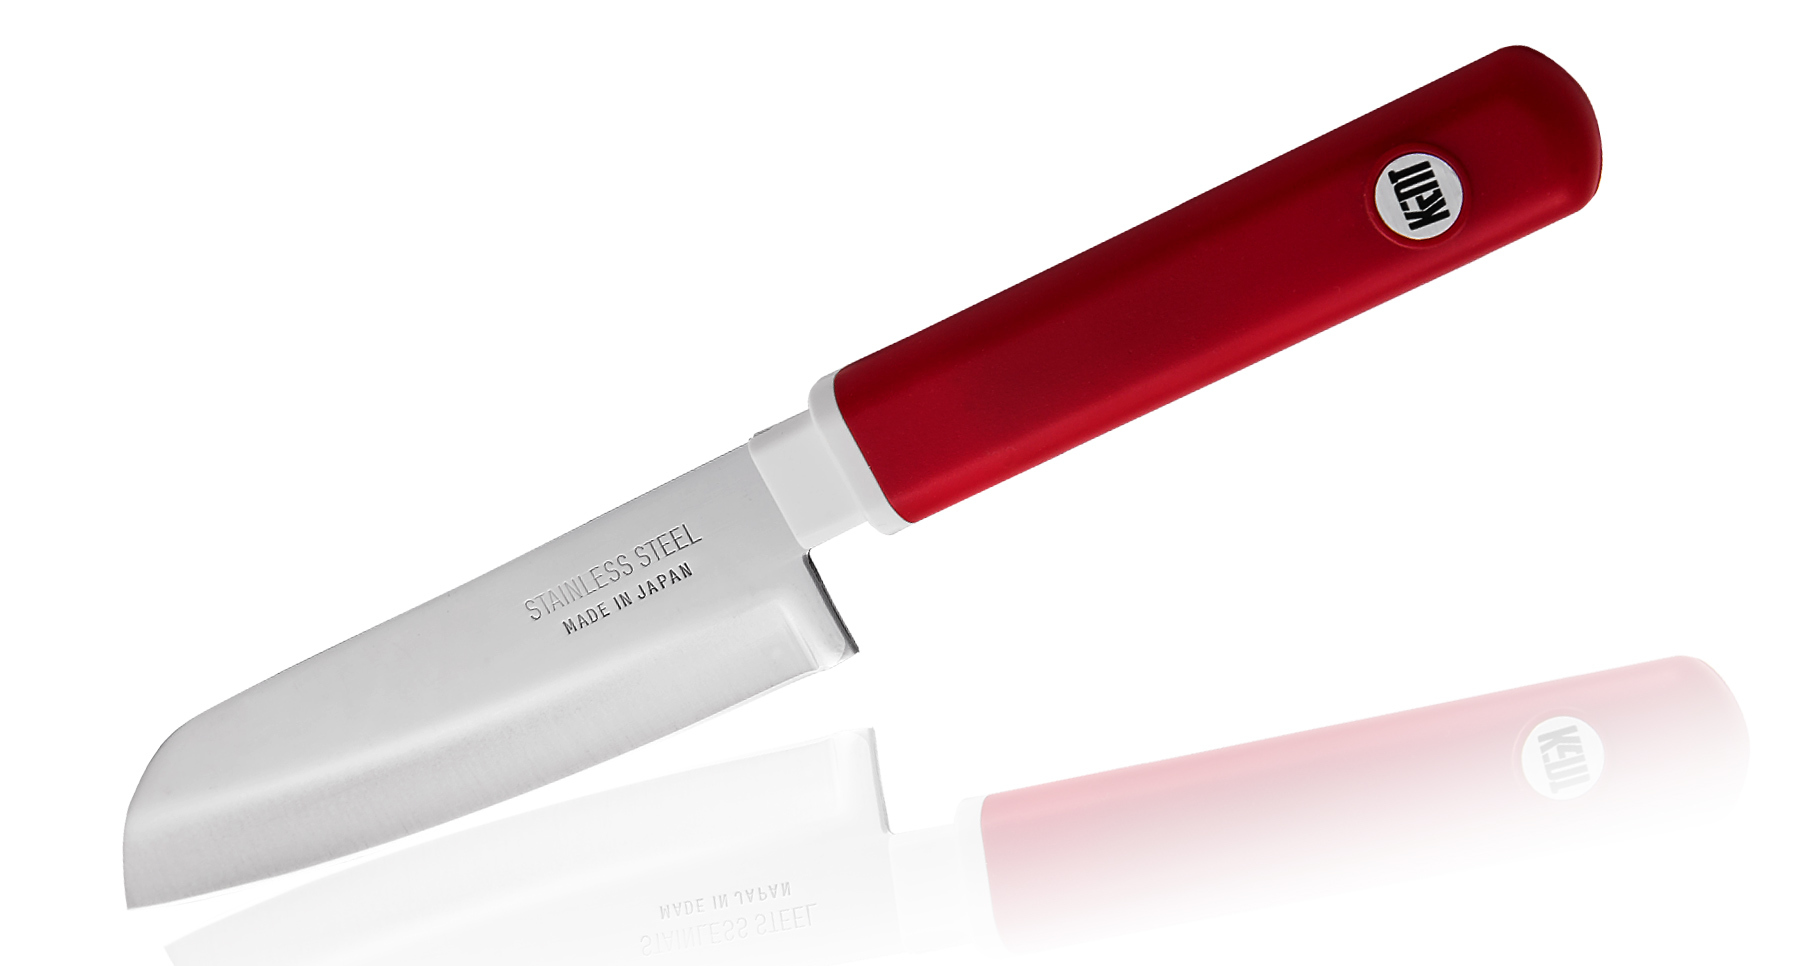 кухонный нож японский шеф нож сантоку fuji cutlery сталь мо v япония fc 79 Кухонный нож овощной, Special Series, Fuji Cutlery, FК-403, сталь Sus420J2, красный